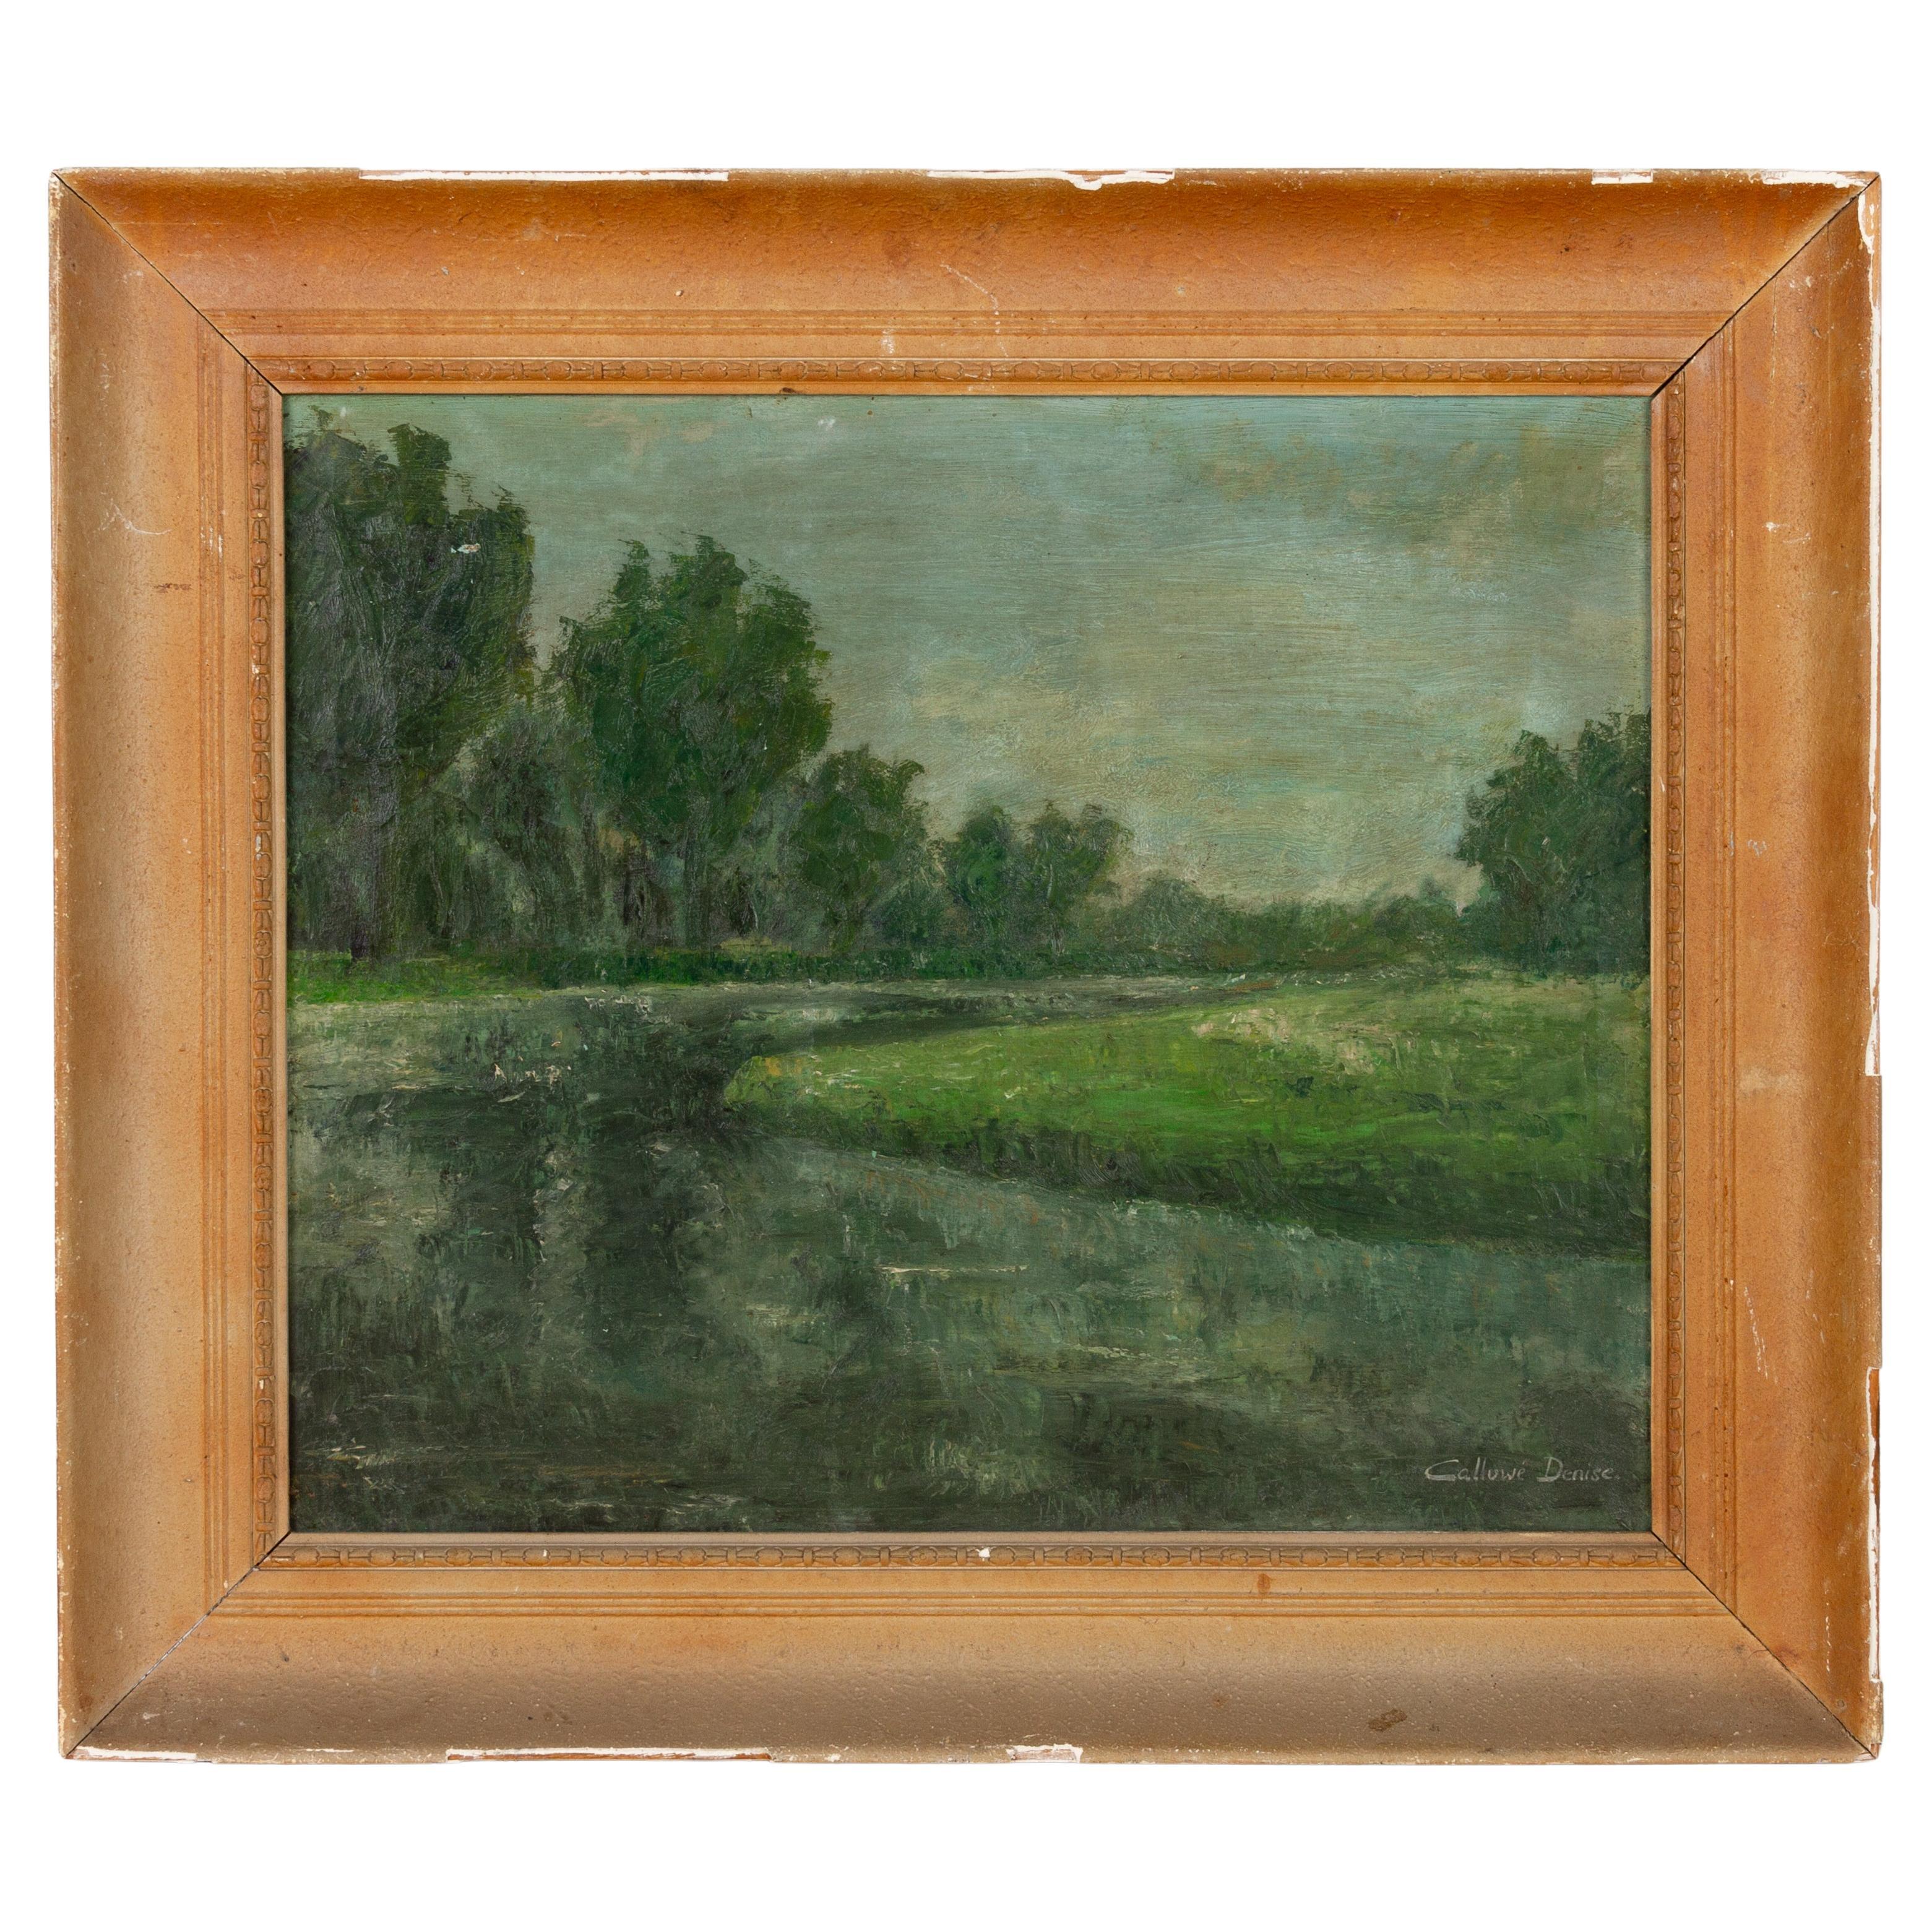 Peinture à l'huile de Calluwe Denise, paysage de rivière, milieu du 20e siècle